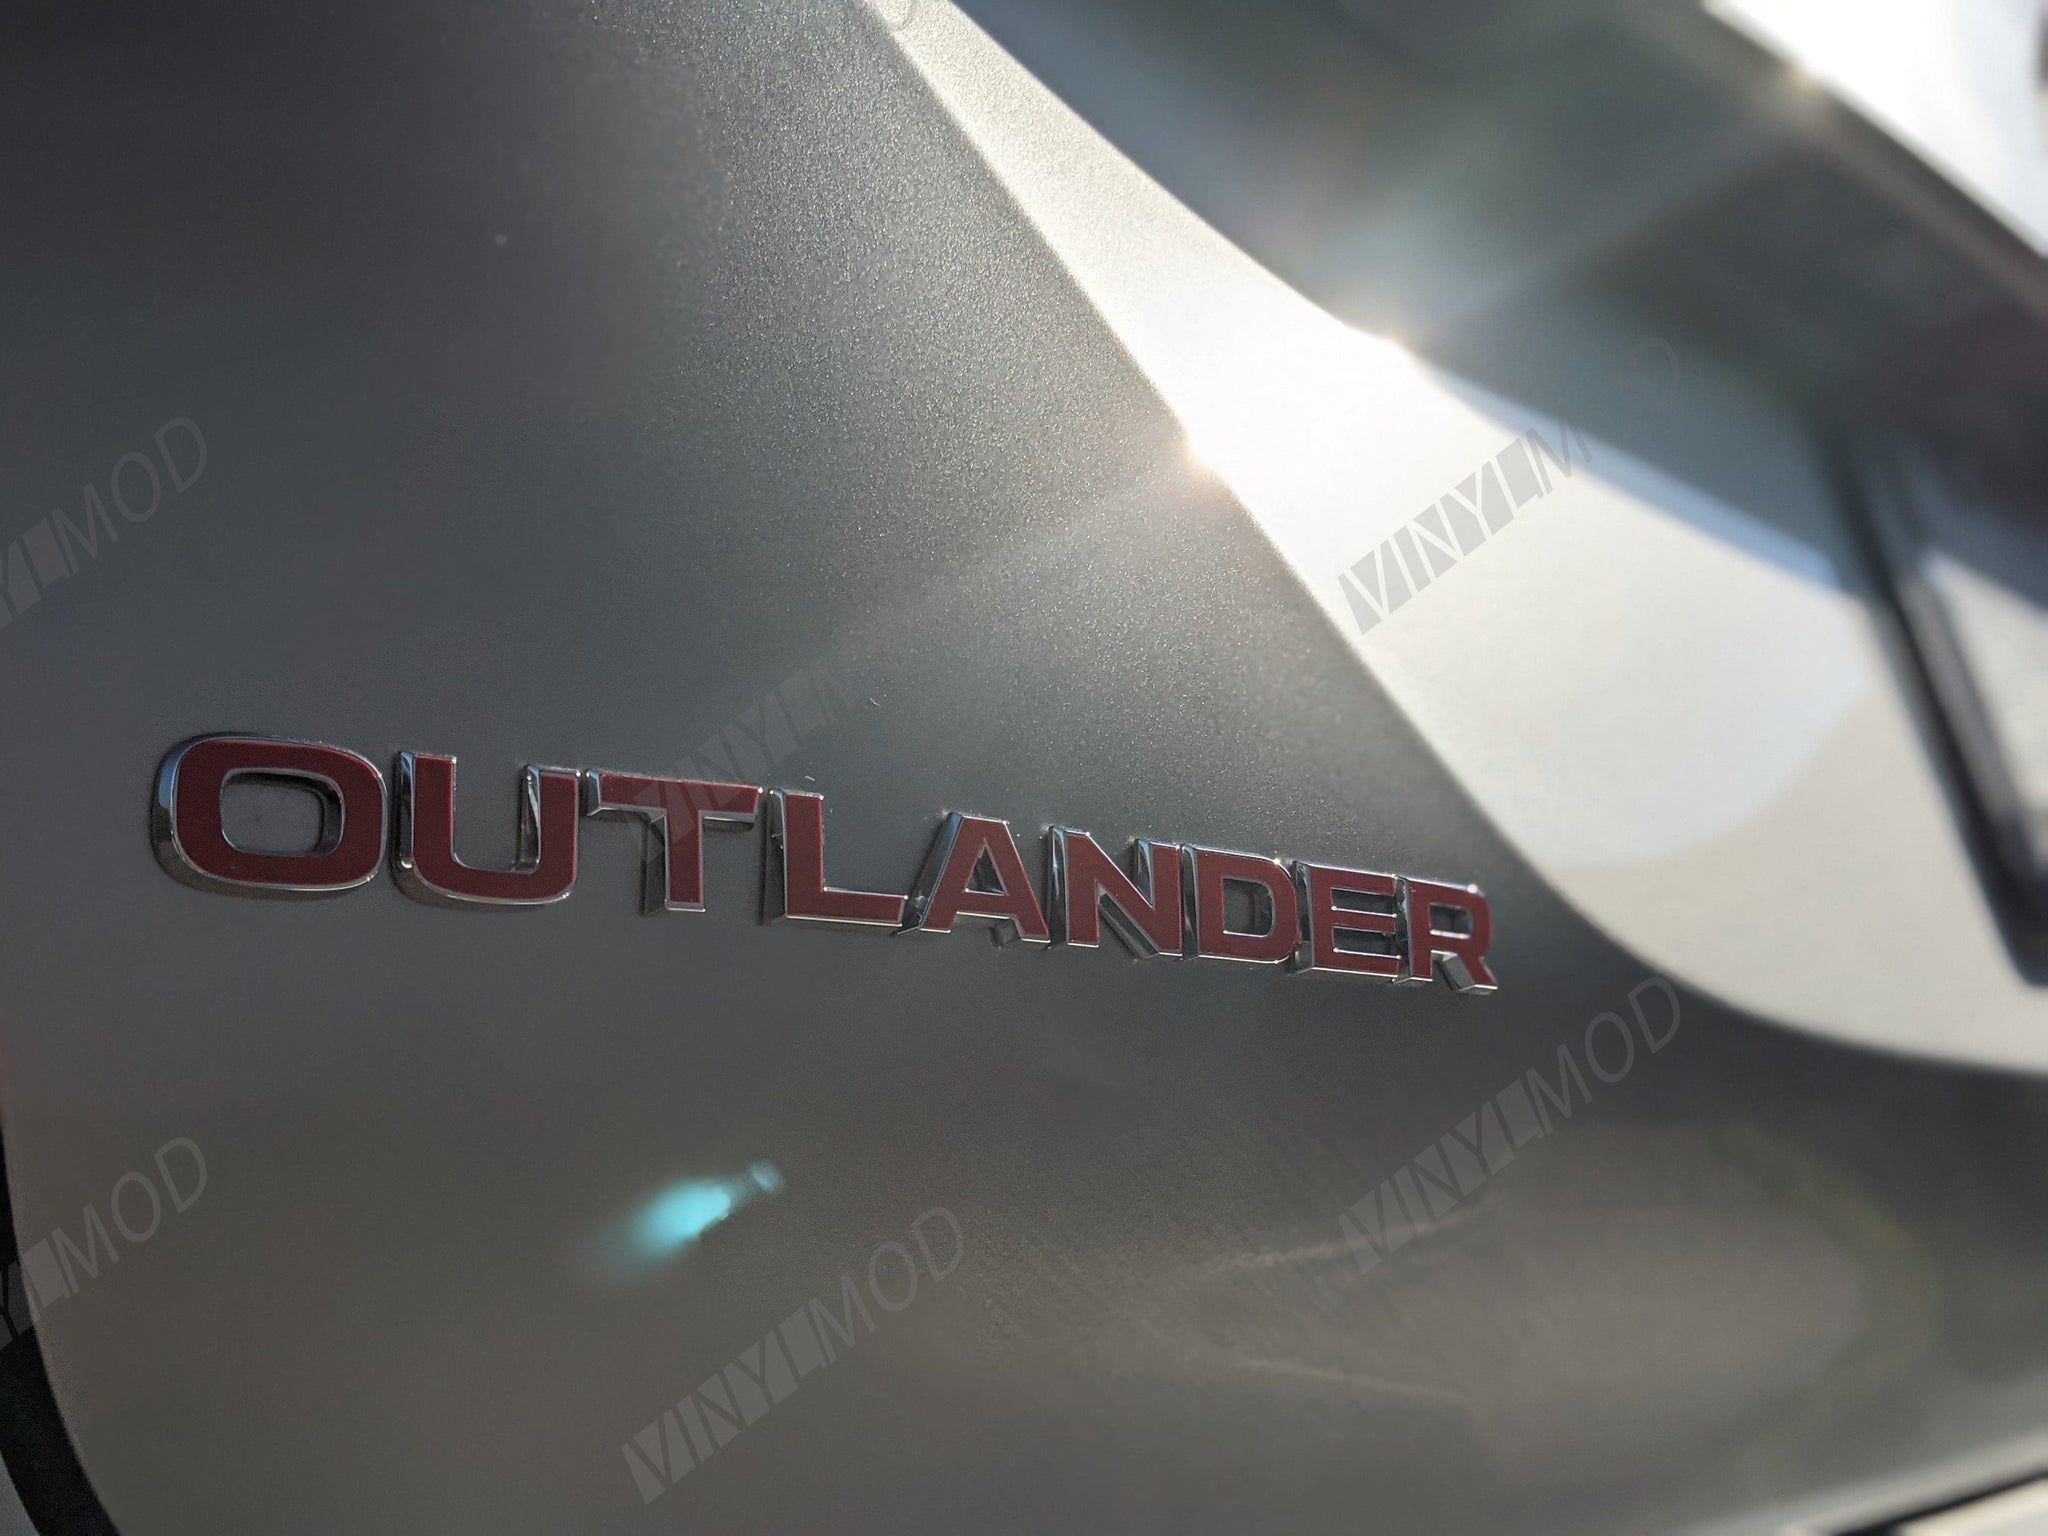 2021+ (4th Gen) Mitsubishi Outlander - Rear Outlander Emblem VinylMod Overlays